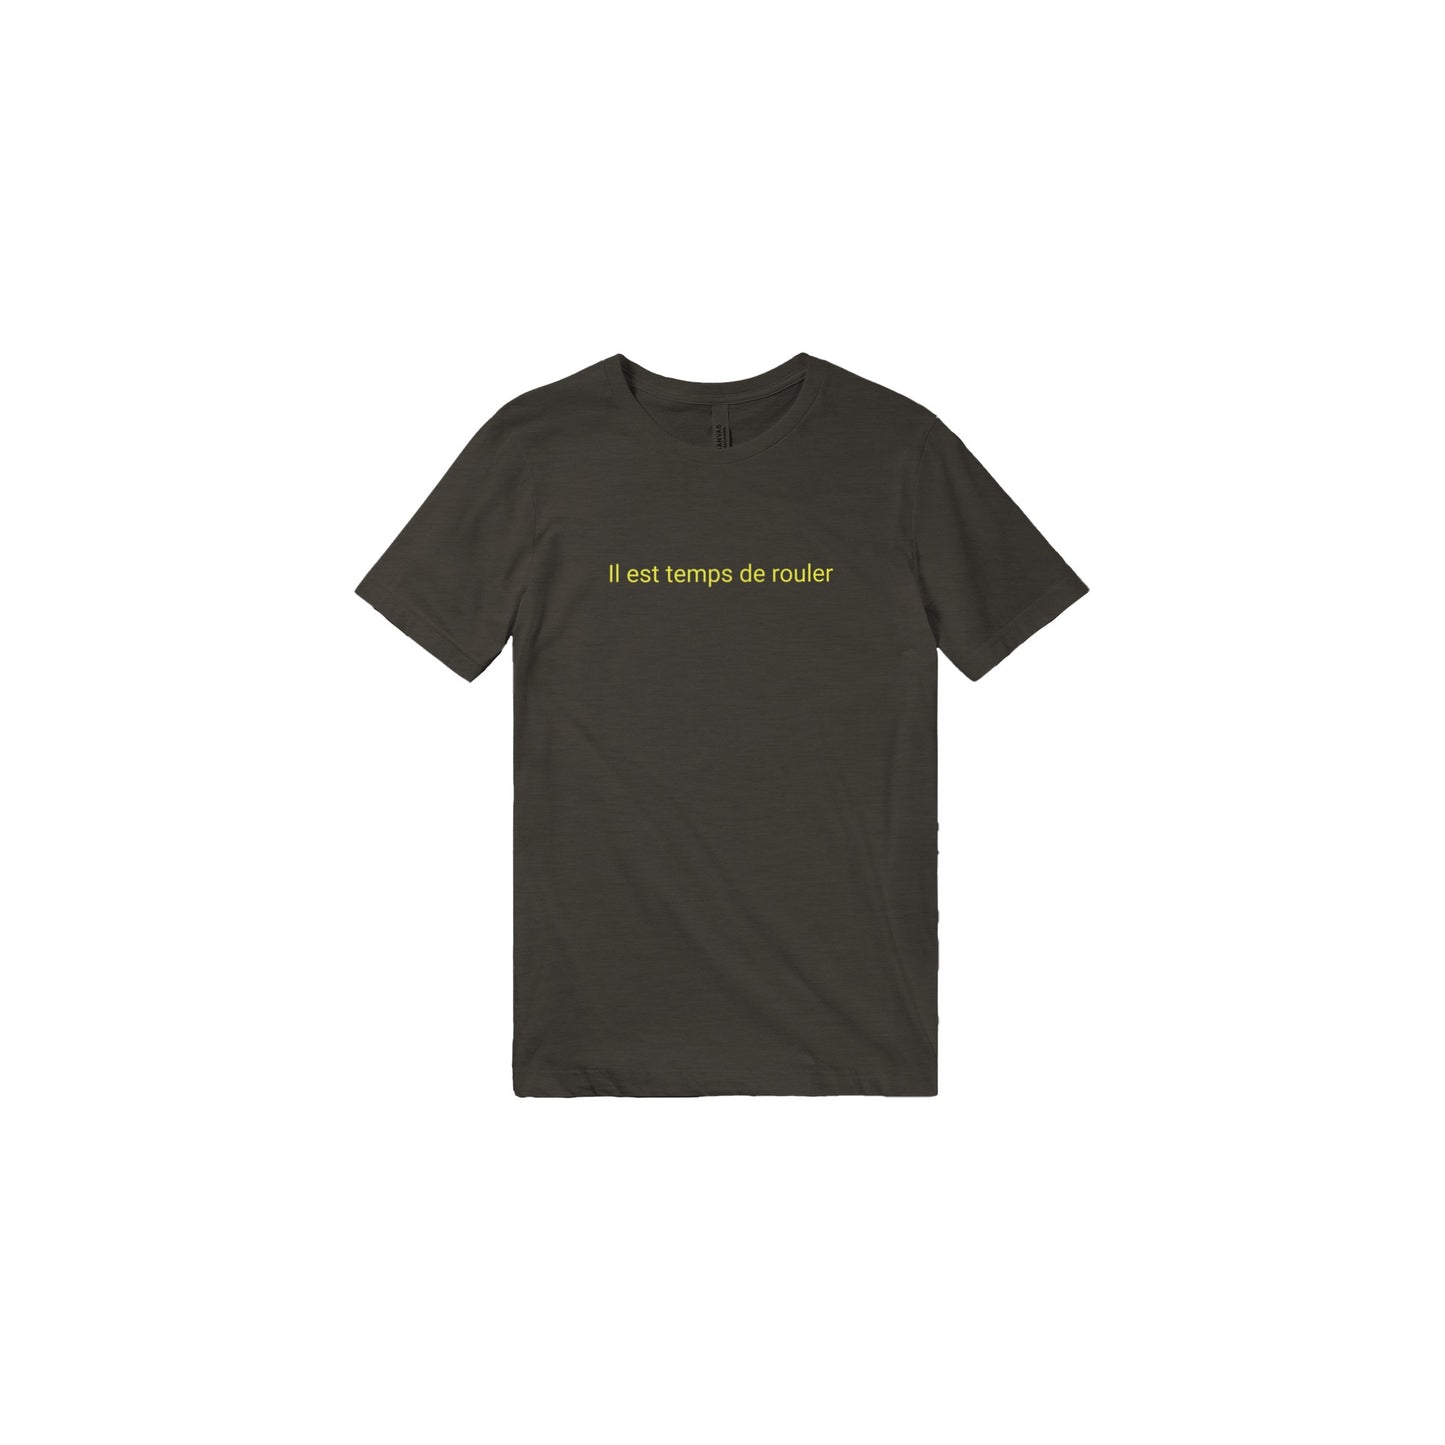 Il est temps de rouler - Triblend Unisex Crewneck T-shirt